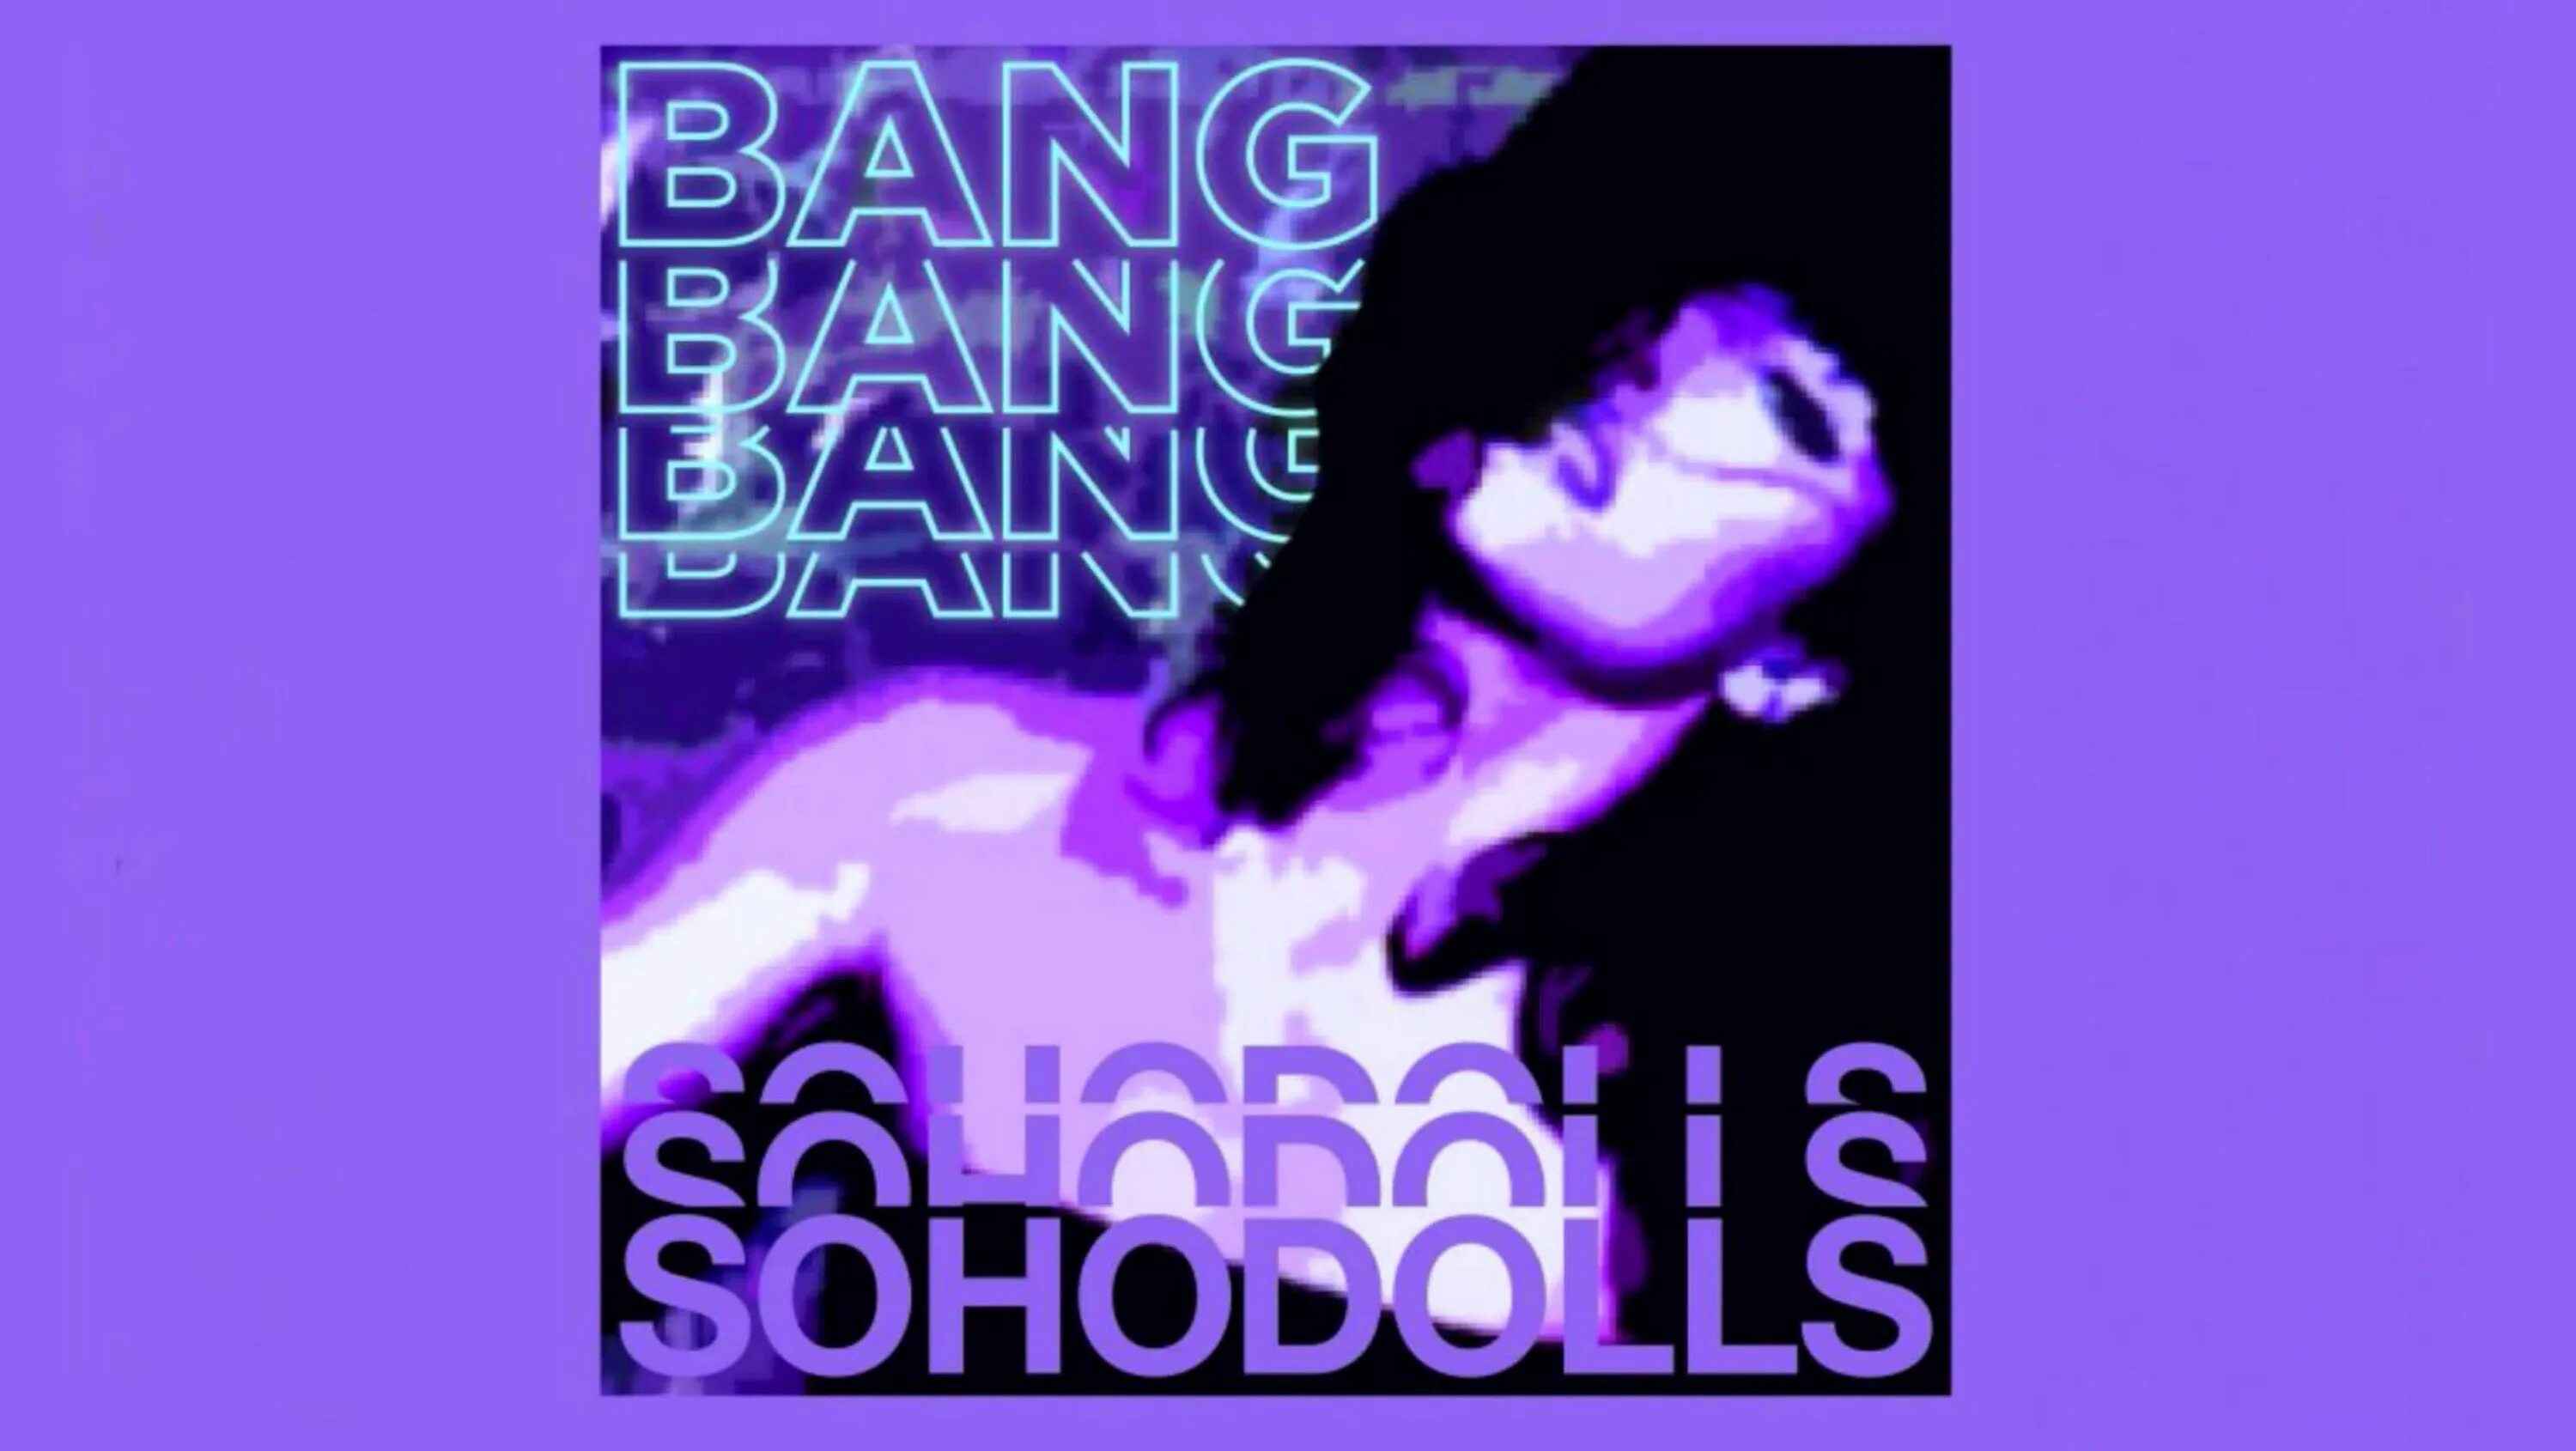 Sohodolls bang bang bang bang перевод. Bang Bang Bang Sohodolls обложка. Песня Bang Bang Bang. Bang Bang Bang Bang Sohodolls песни. Песня Bang Bang Speed up.